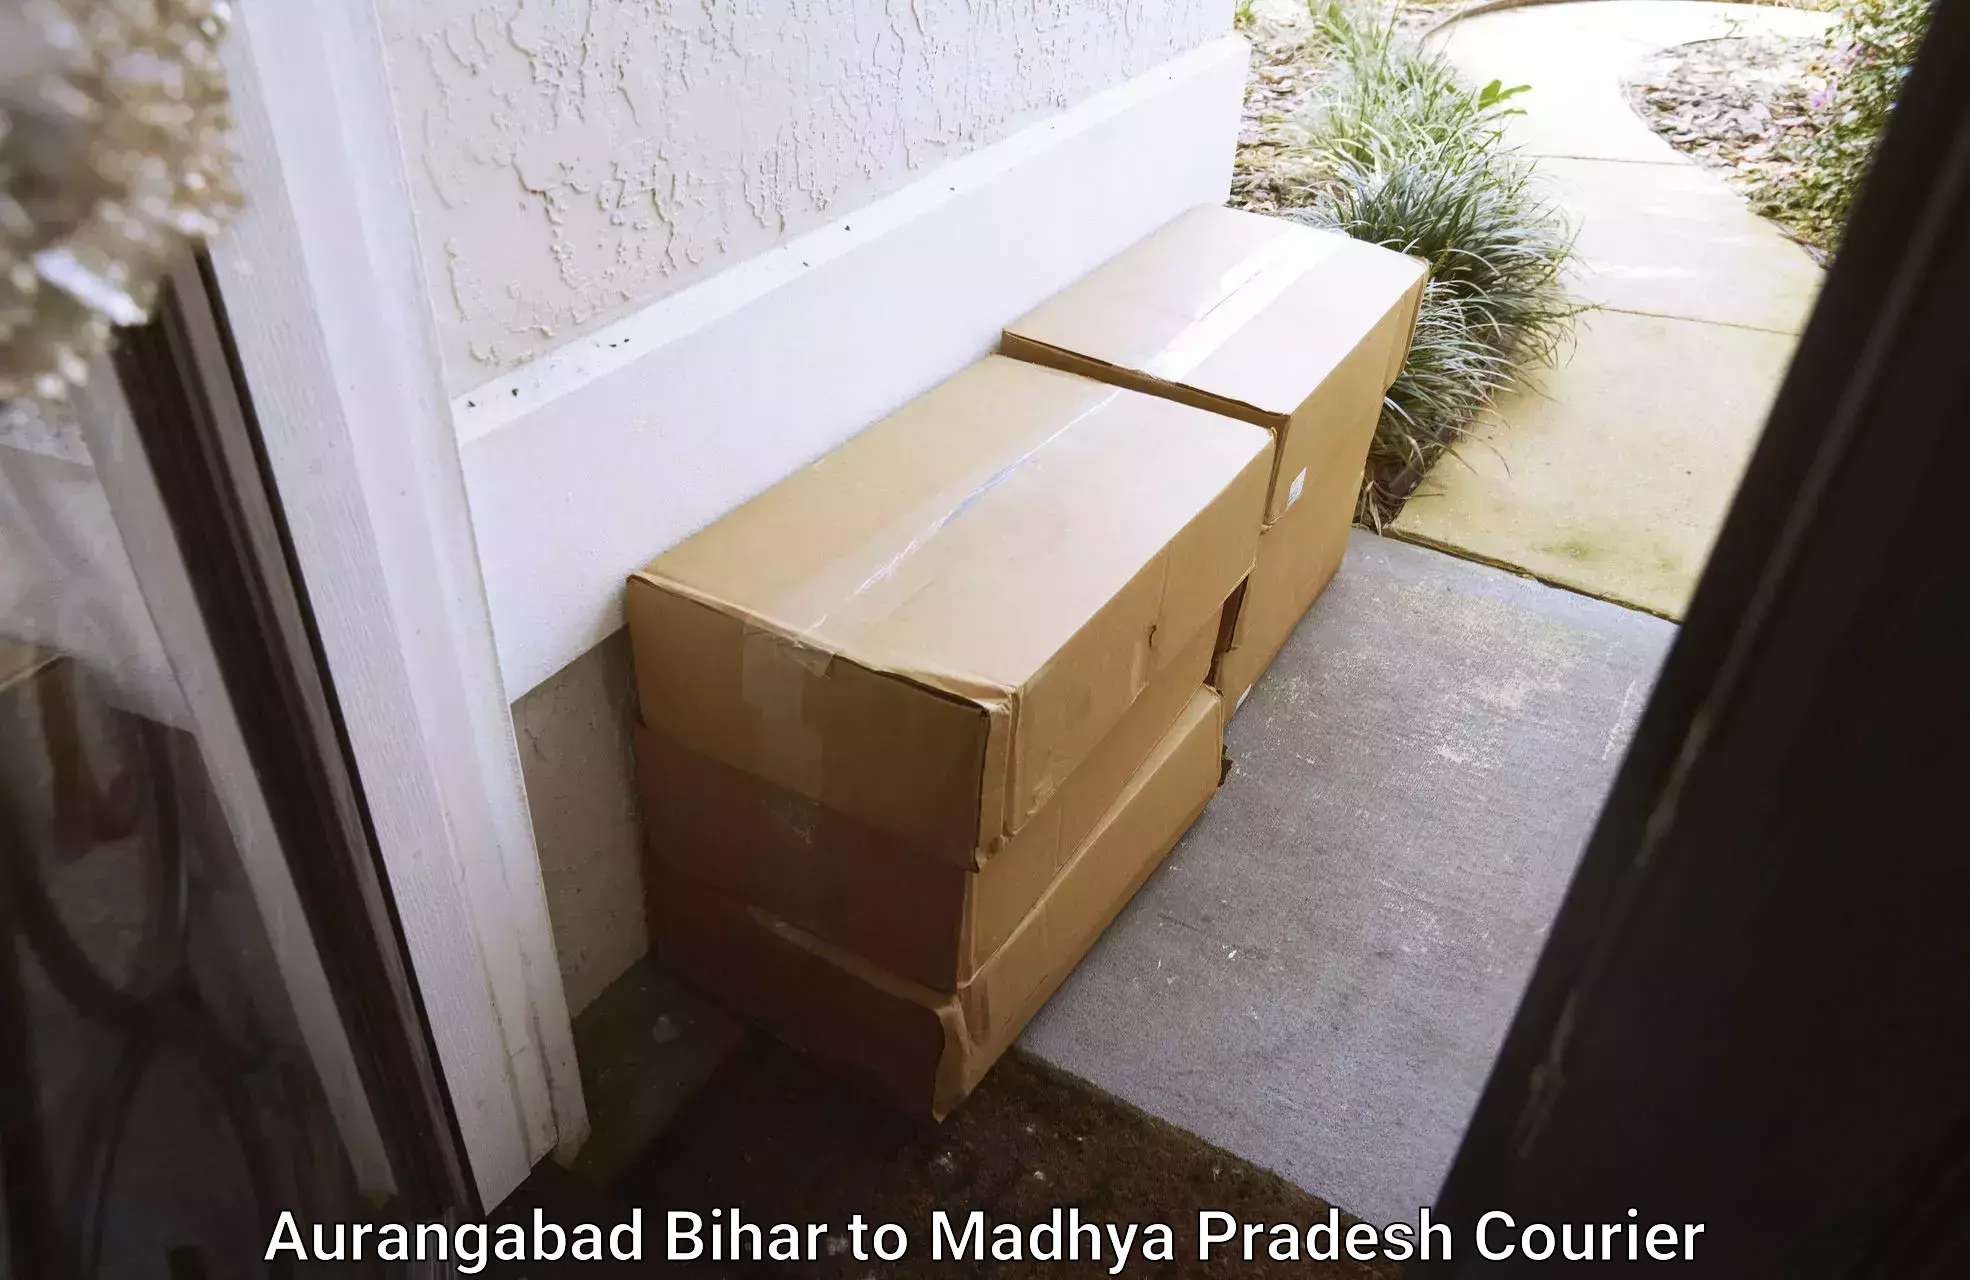 Household goods transporters Aurangabad Bihar to Dhar